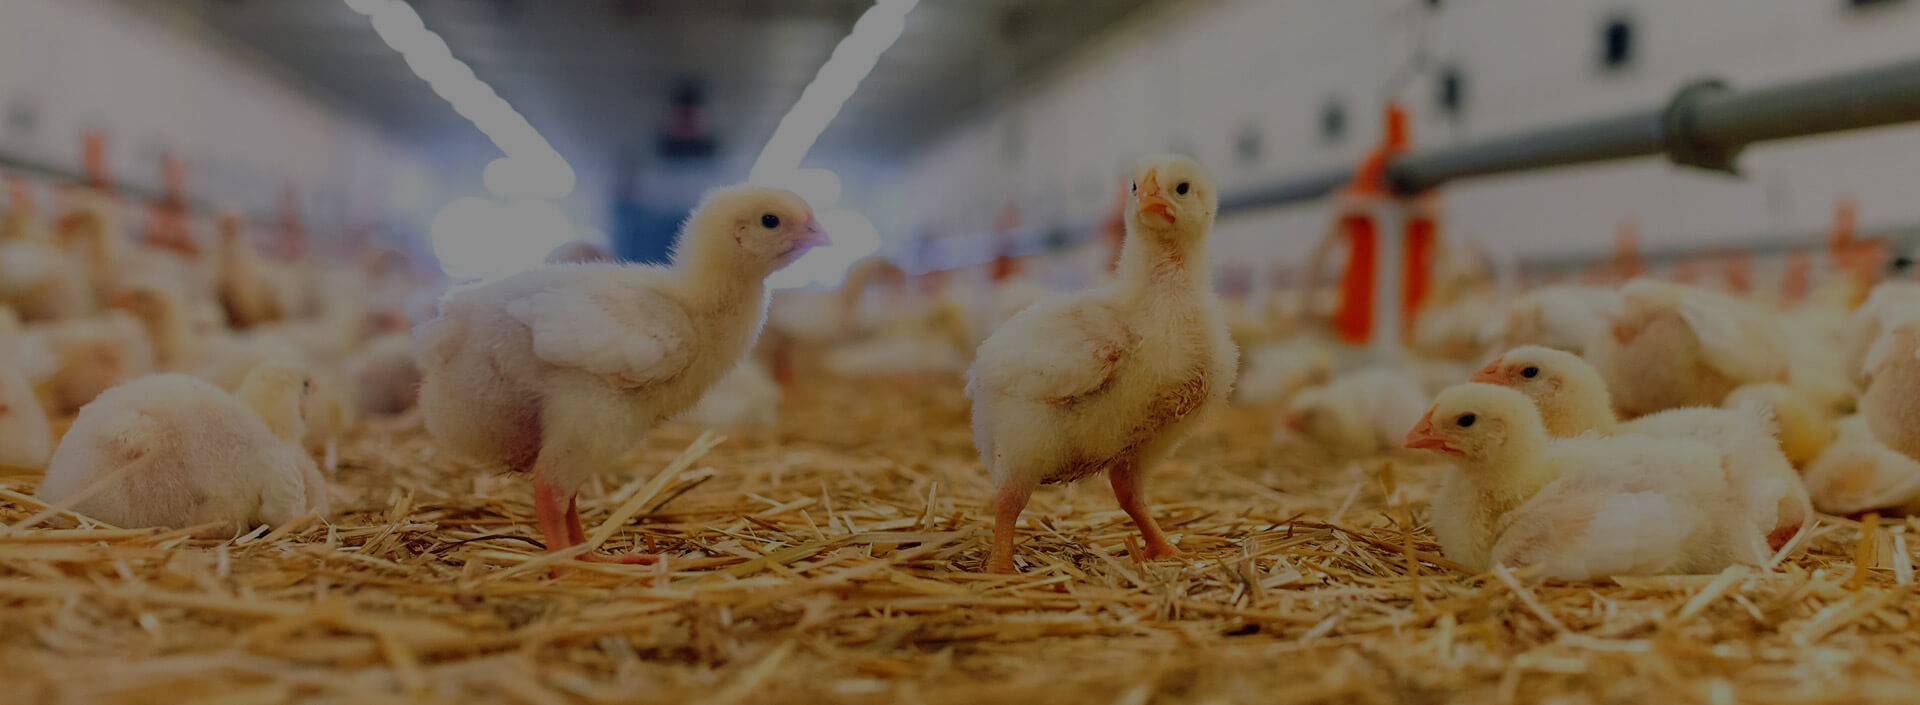 Grantec Equipamientos para granjas avículas | Recría, Producción, Incubación y aves de Engorde.